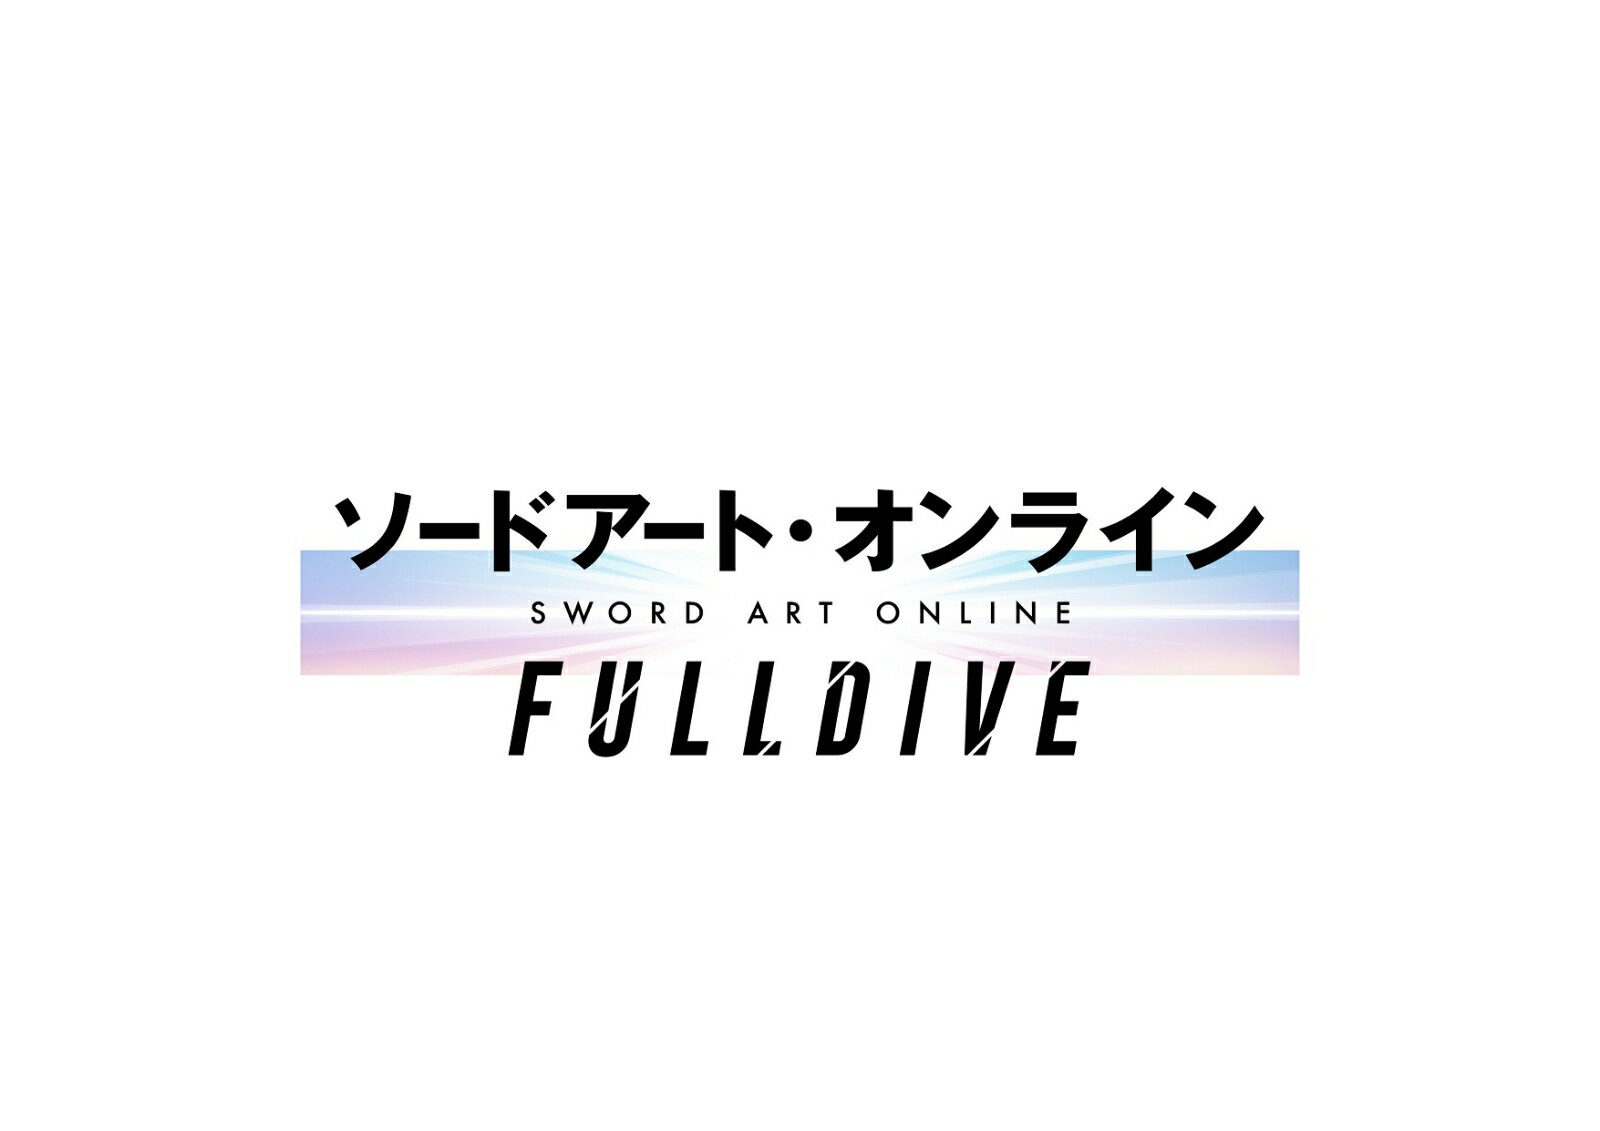 ソードアート・オンライン -フルダイブー【完全生産限定版】【Blu-ray】